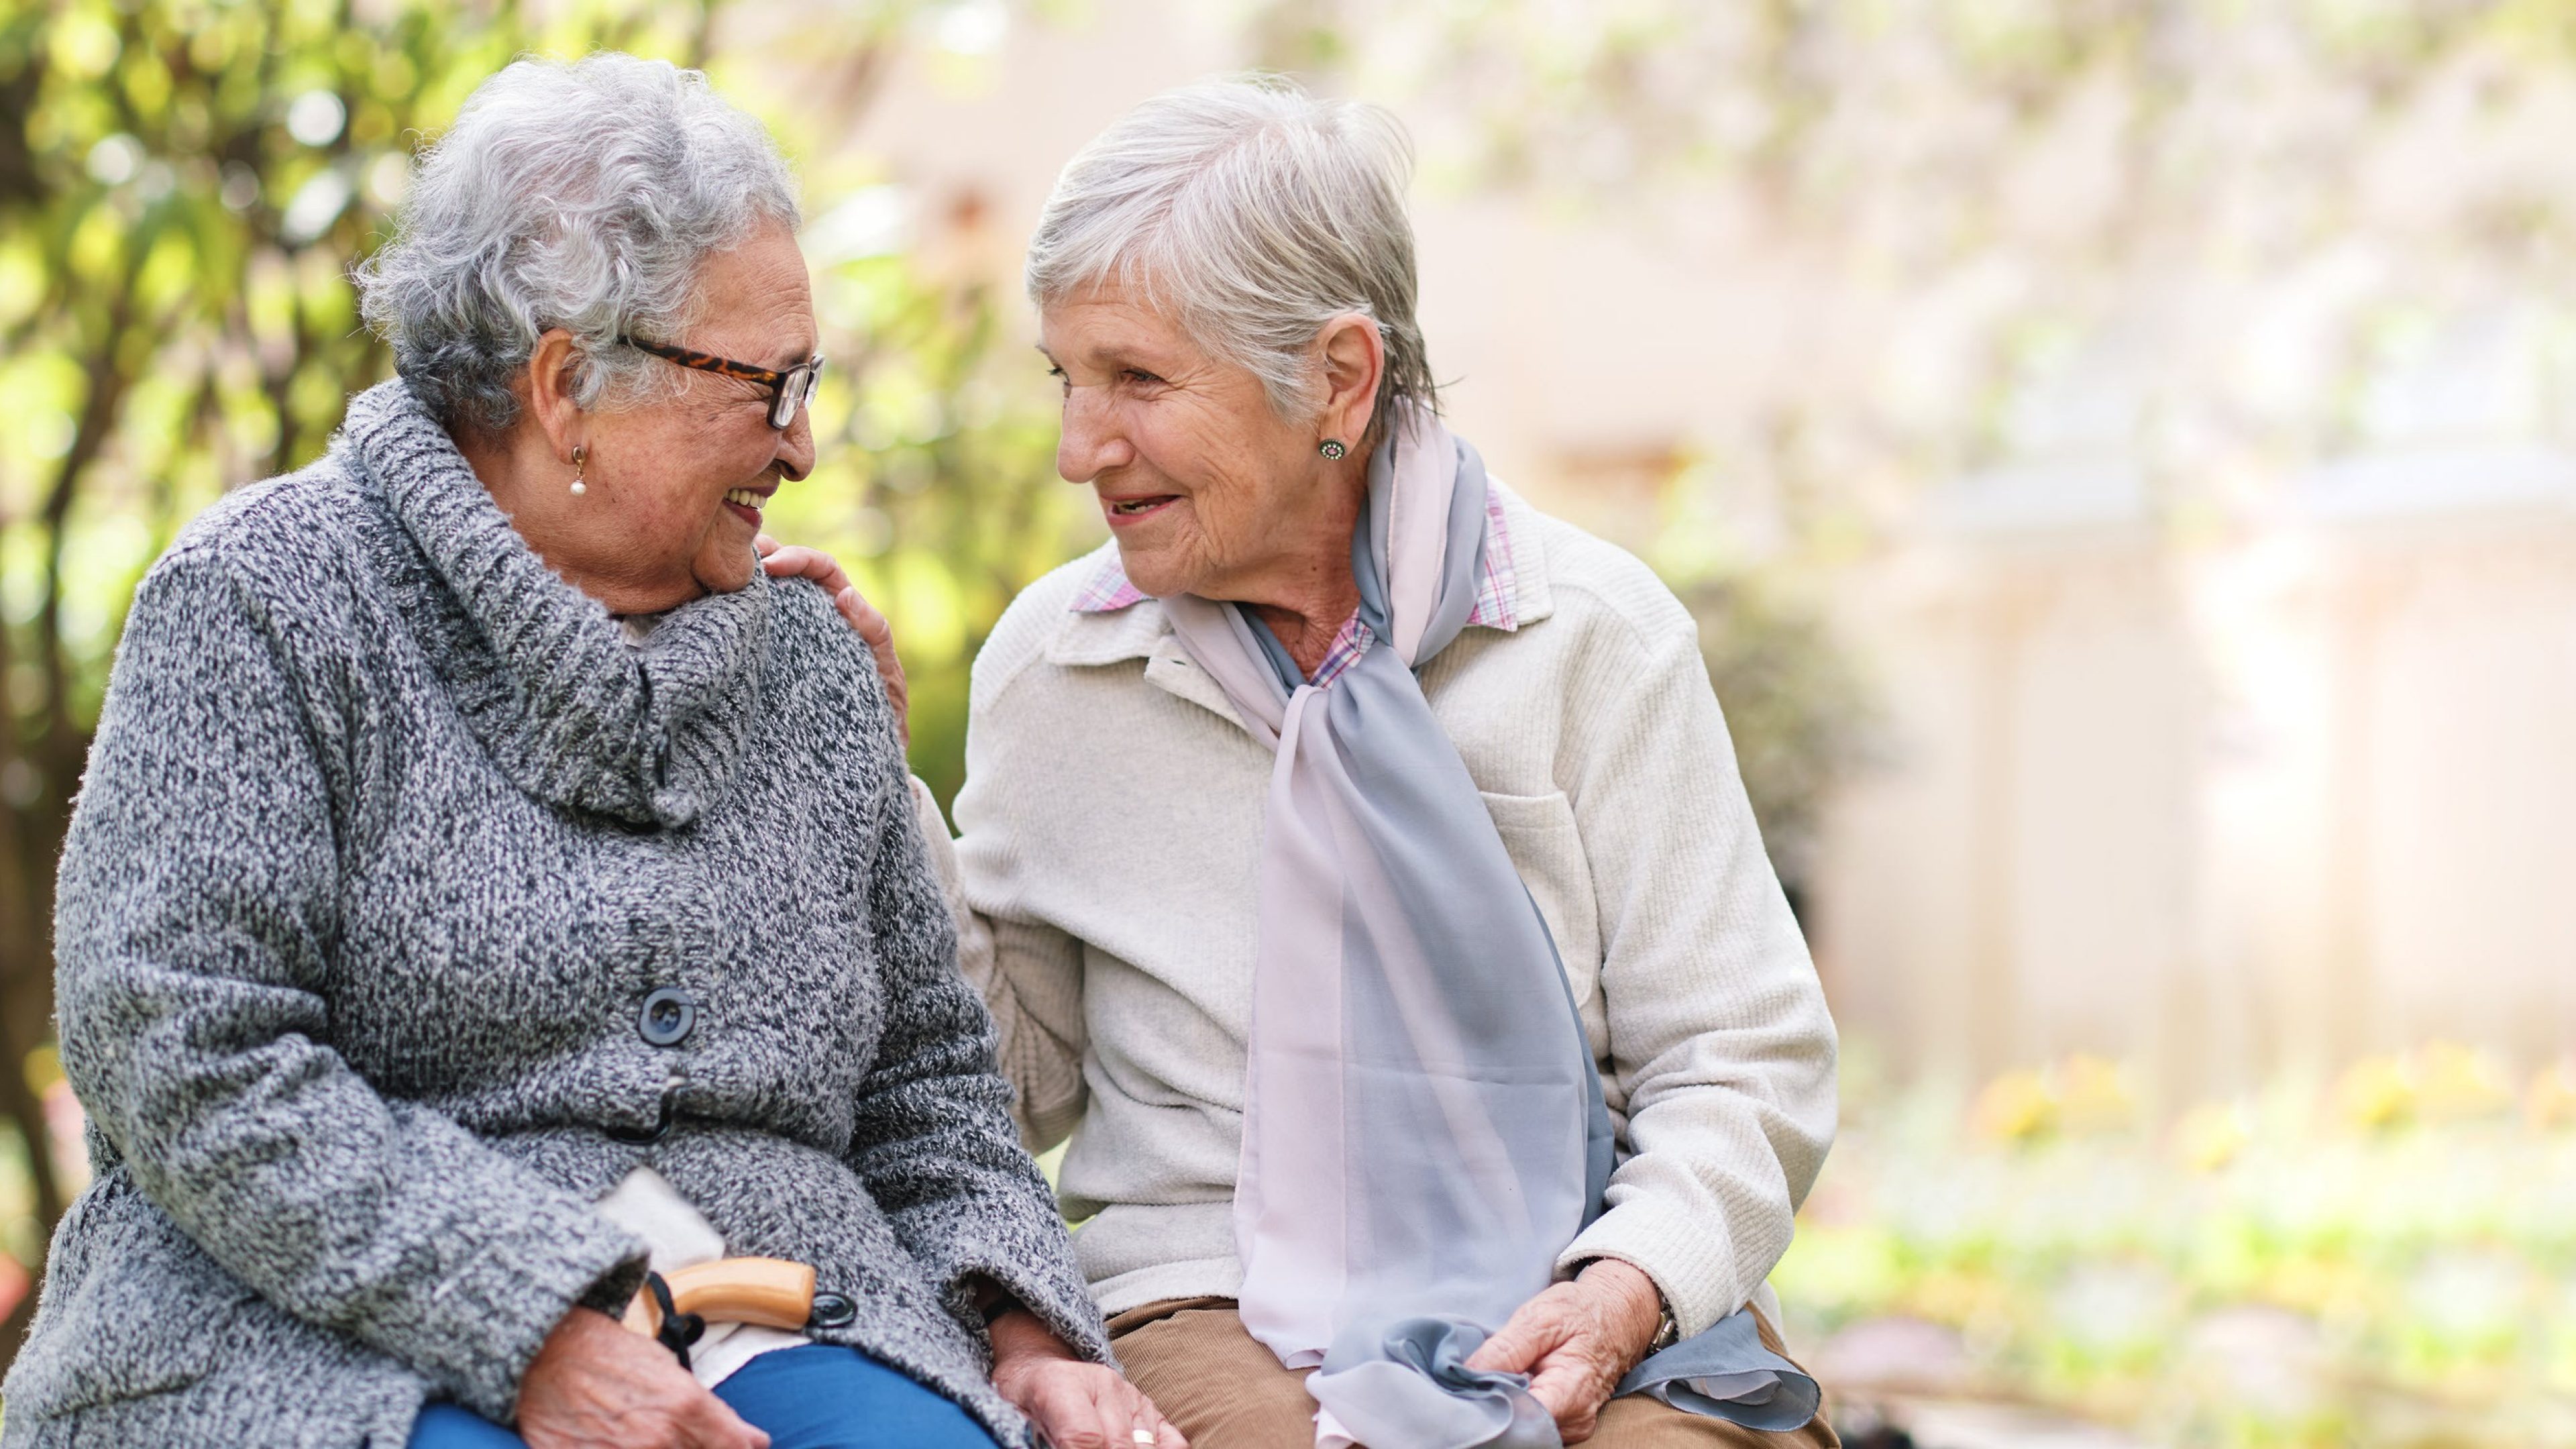 Deux femmes âgées assises sur un banc dans un parc sourient, heureuses d'être des amies de longue date et de profiter de leur retraite.